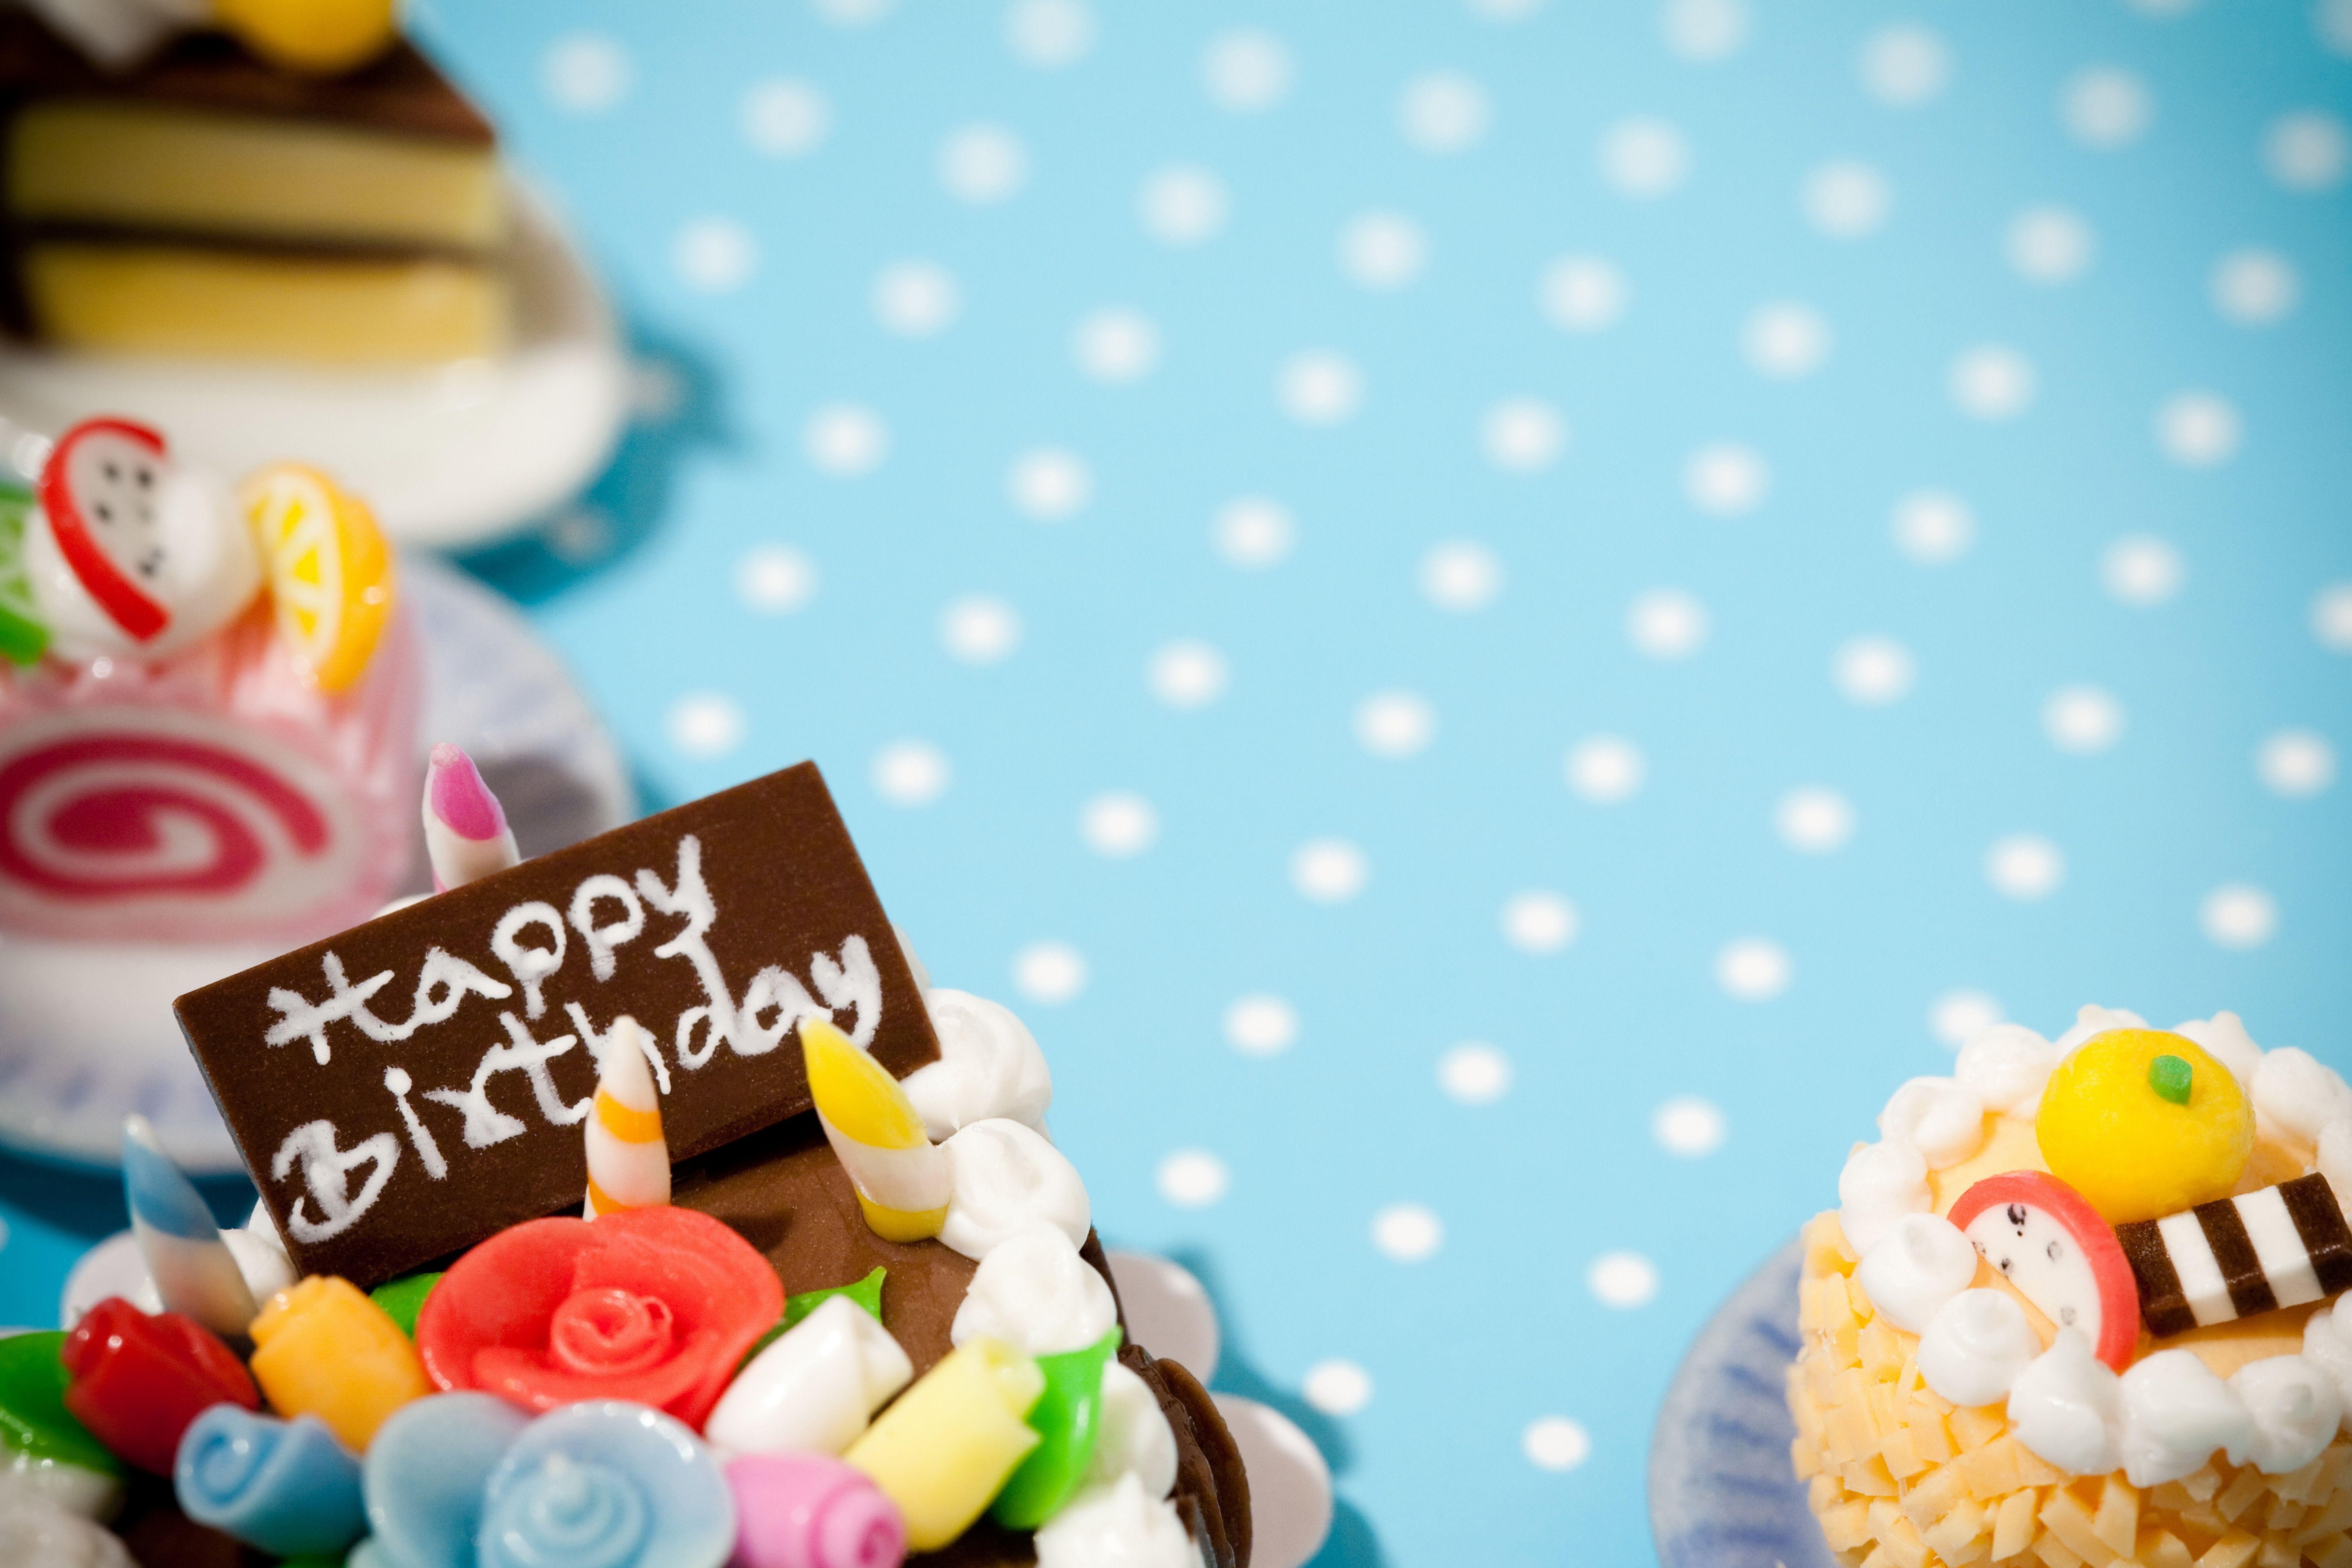 Hình nền bánh sinh nhật: Chắc chắn rằng bạn sẽ không muốn bỏ lỡ những mẫu hình nền bánh sinh nhật đẹp mắt và ngon làm nền tảng cho điện thoại hay máy tính của bạn. Hãy tìm kiếm những hình ảnh bánh độc đáo và bắt mắt để tôn lên sự đặc biệt của ngày sinh nhật.